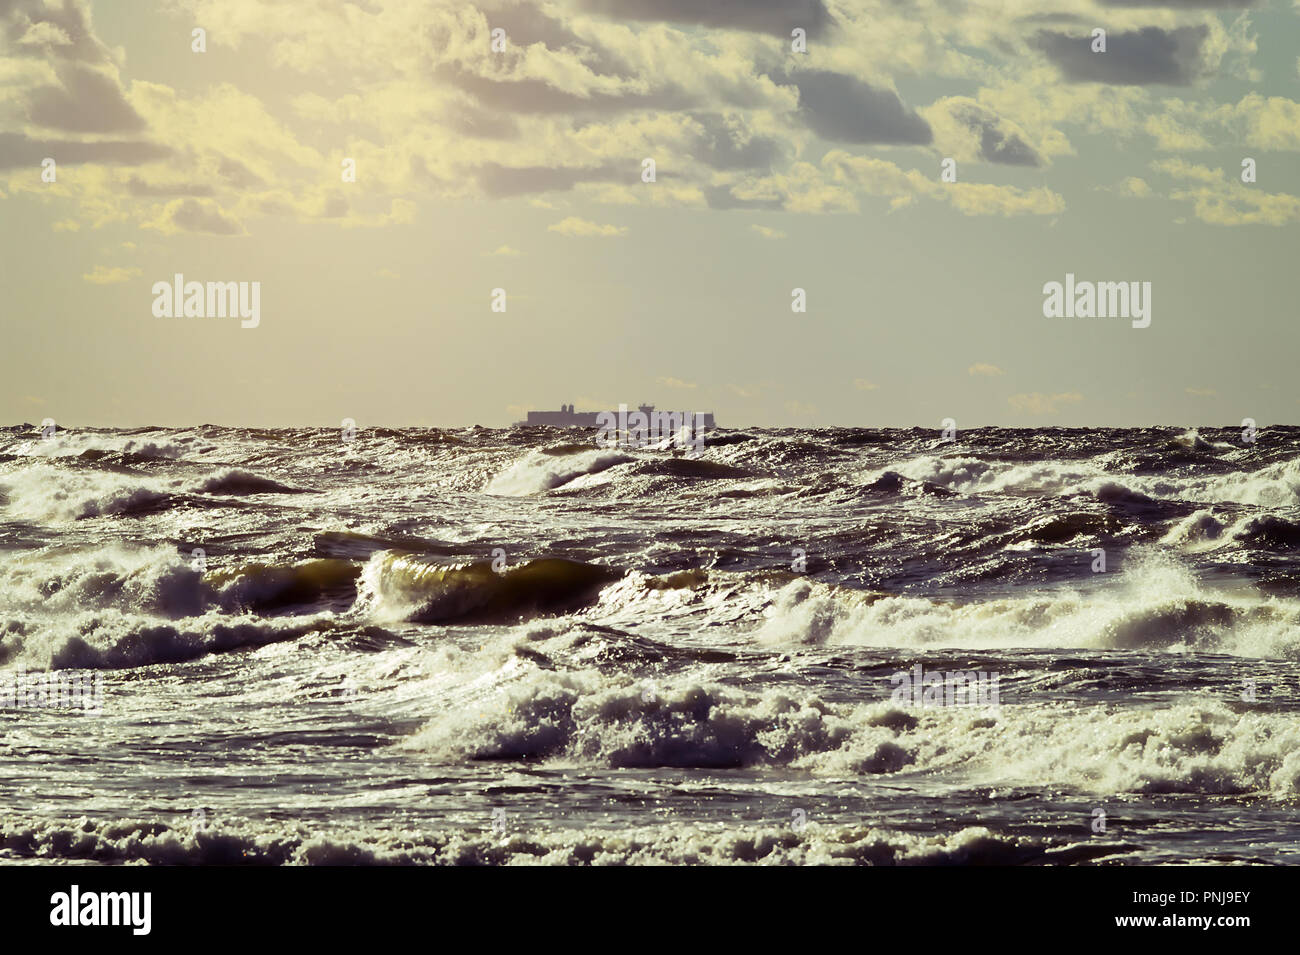 Frachtschiff Silhouette am Horizont. Große Container schiff Segeln durch die stürmischen Wellen der Ostsee. Die Danziger Bucht, Pommern, Polen. Stockfoto